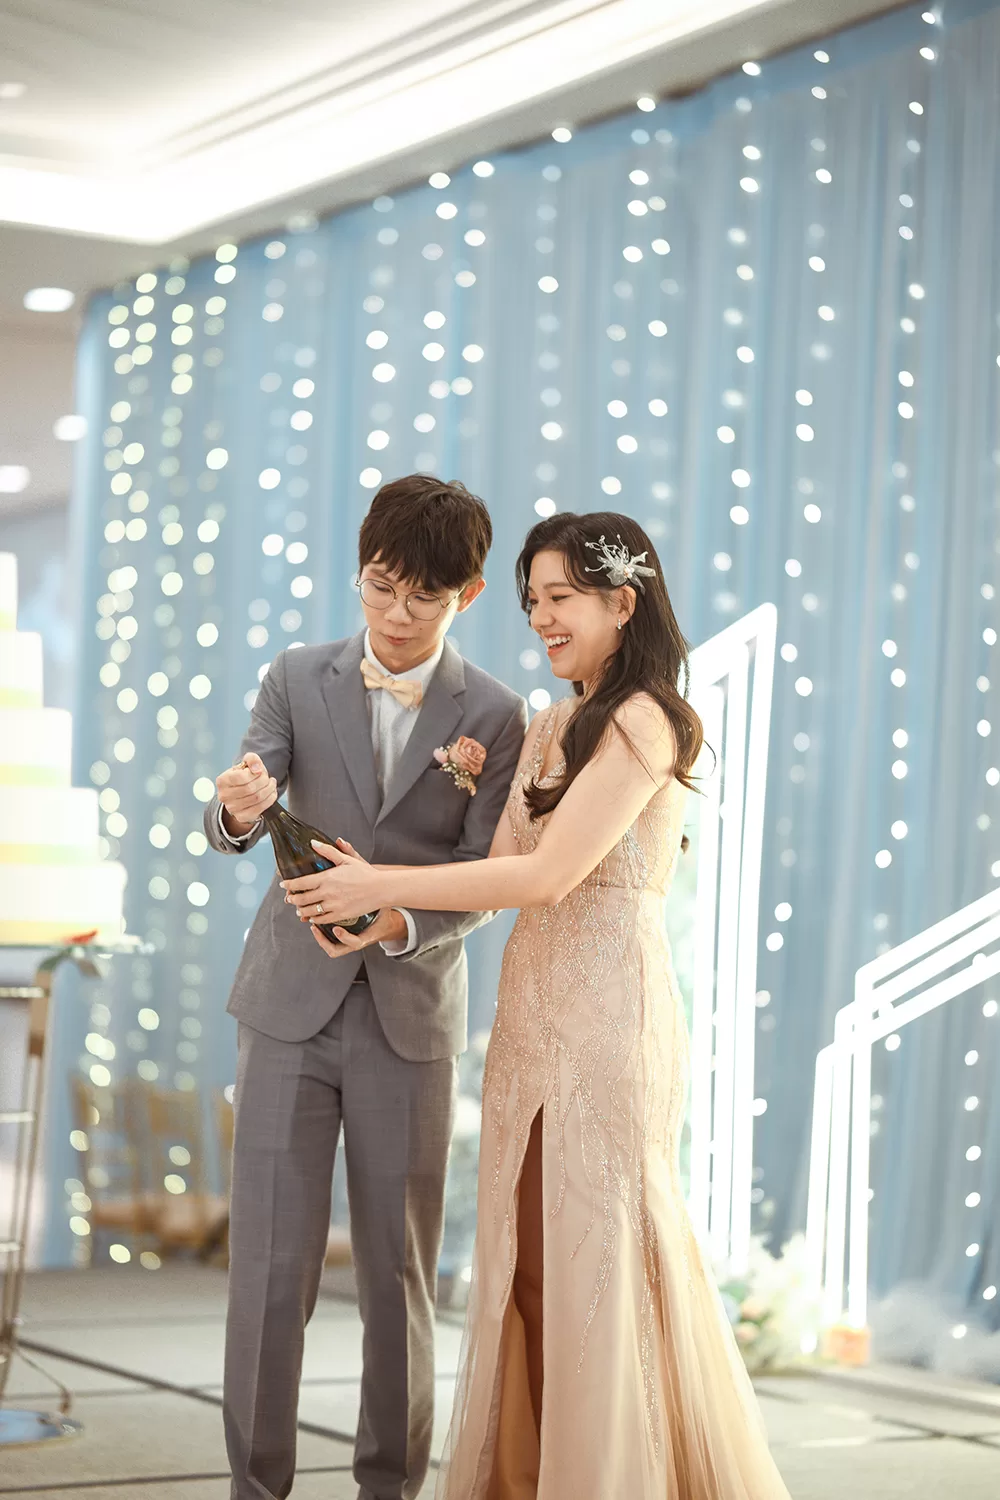 Actual day wedding at Equarius Hotel, Singapore.